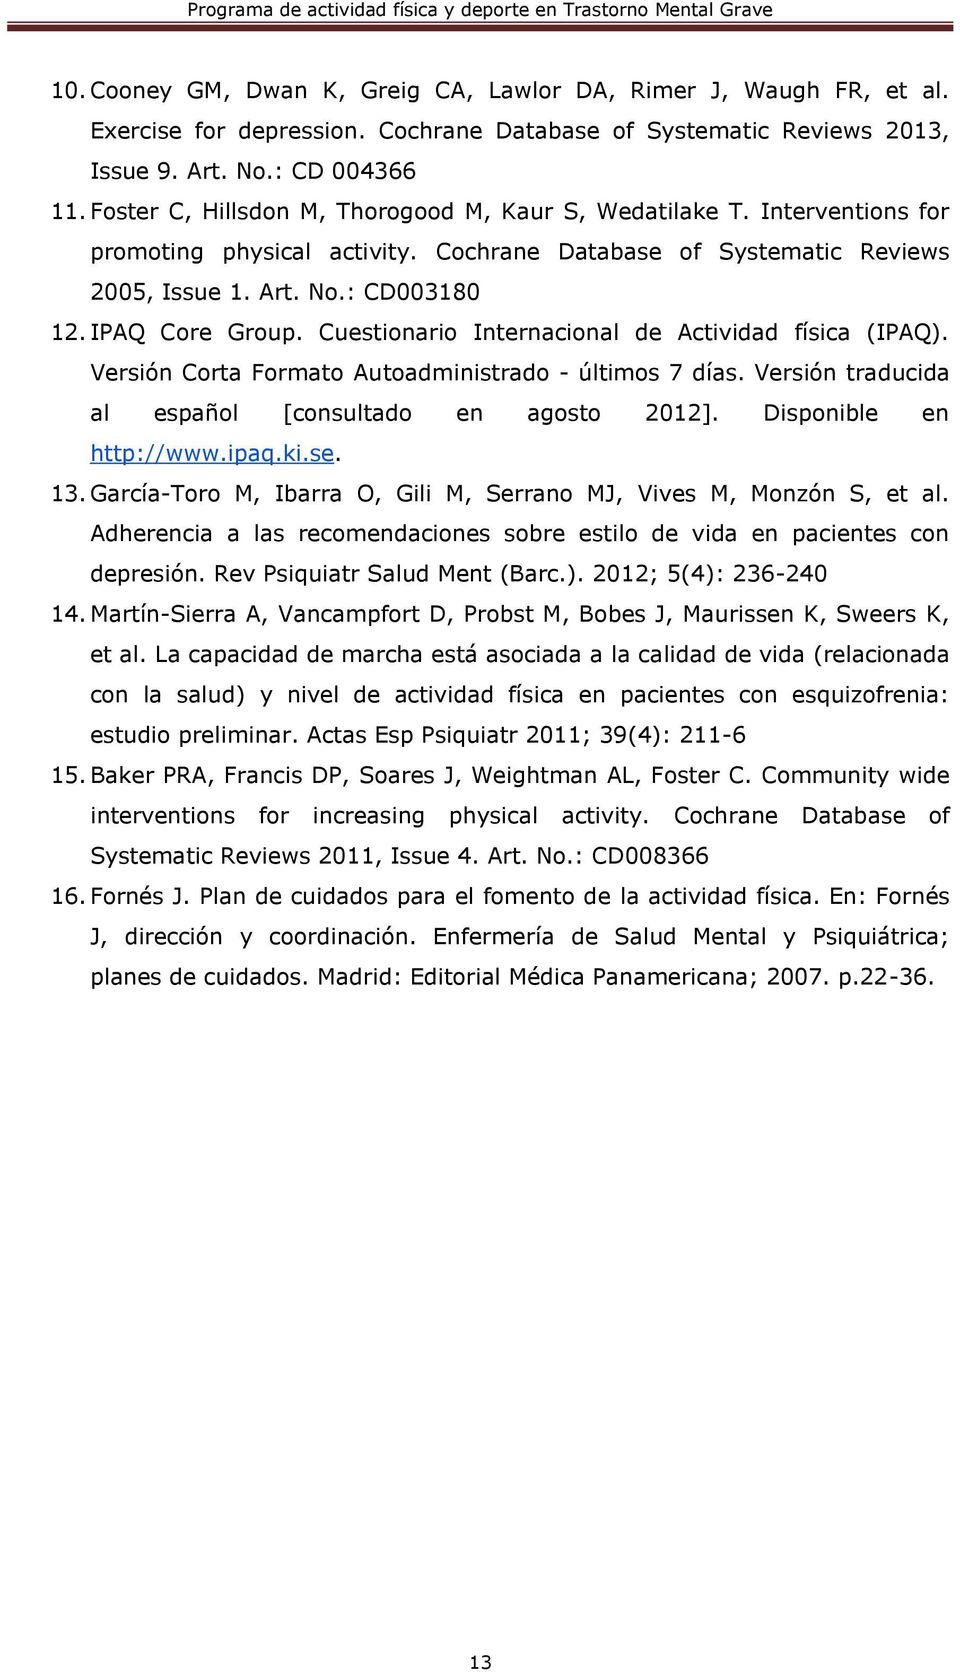 Cuestionario Internacional de Actividad física (IPAQ). Versión Corta Formato Autoadministrado - últimos 7 días. Versión traducida al español [consultado en agosto 2012]. Disponible en http://www.ipaq.